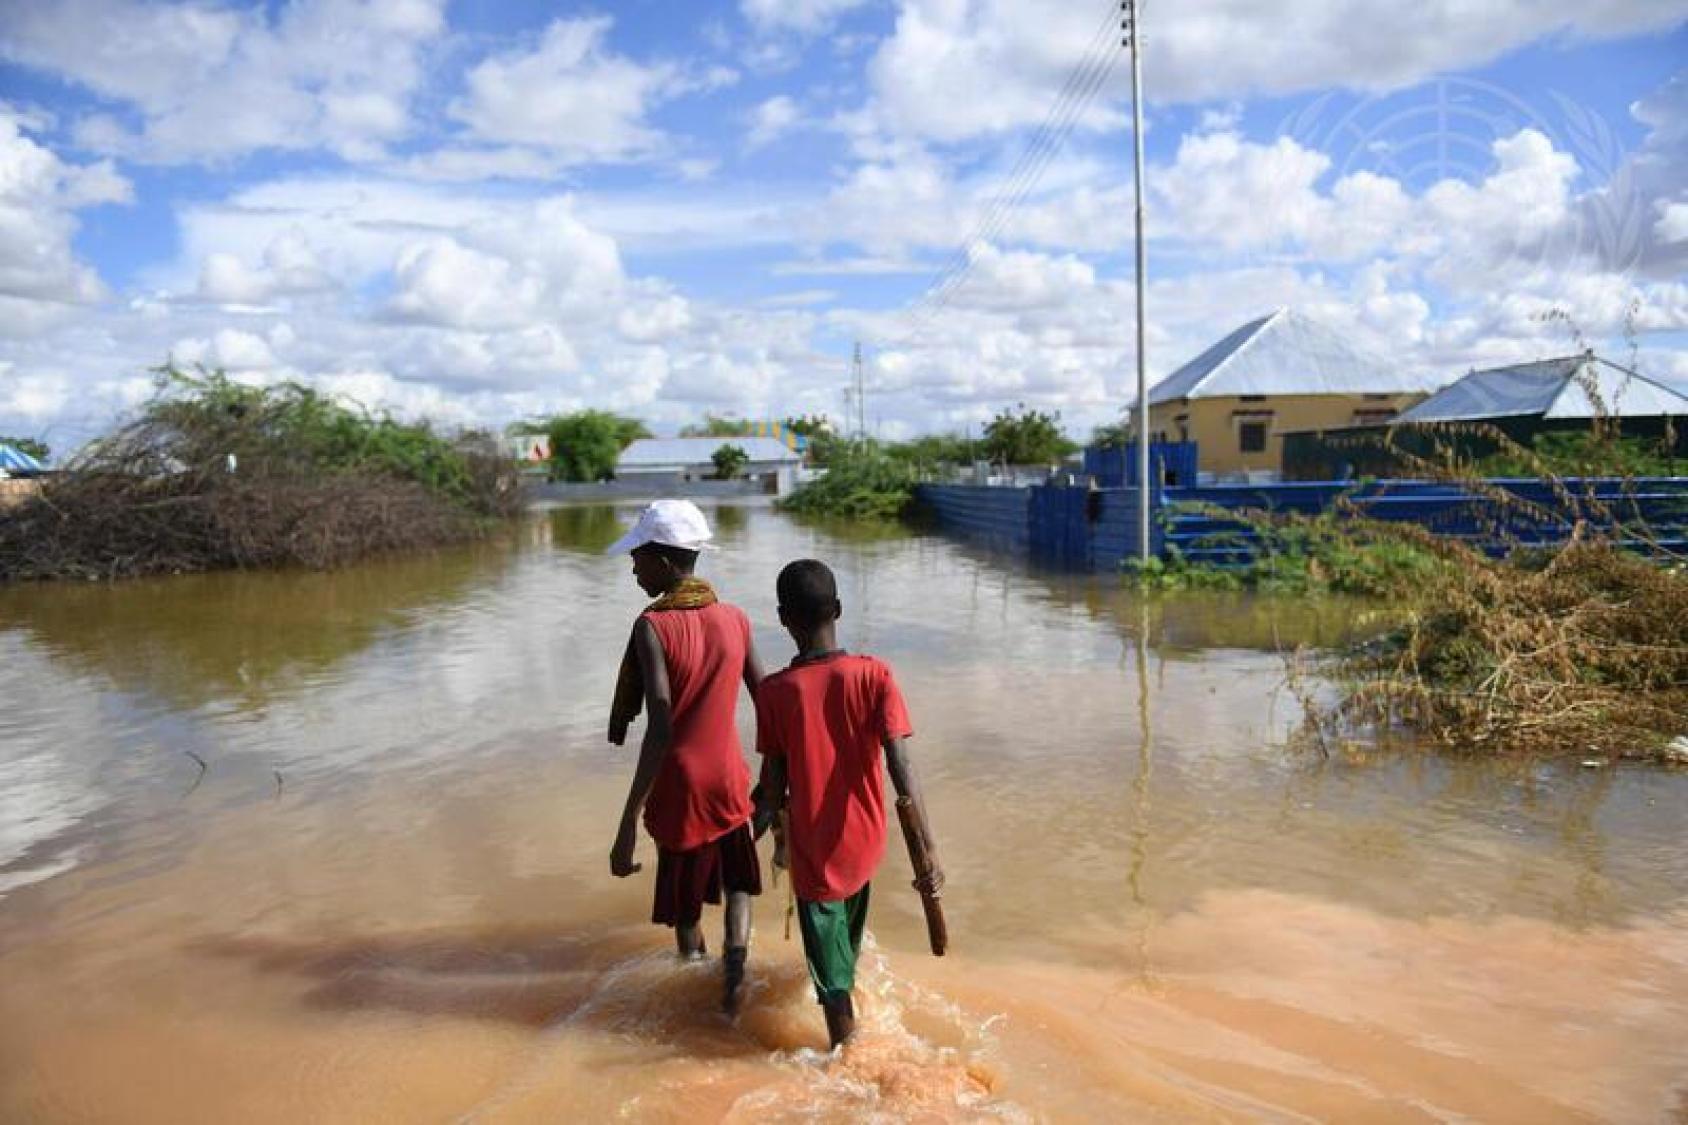 صبيان يسيران في منطقة غمرتها المياه بالقرب من المنازل.